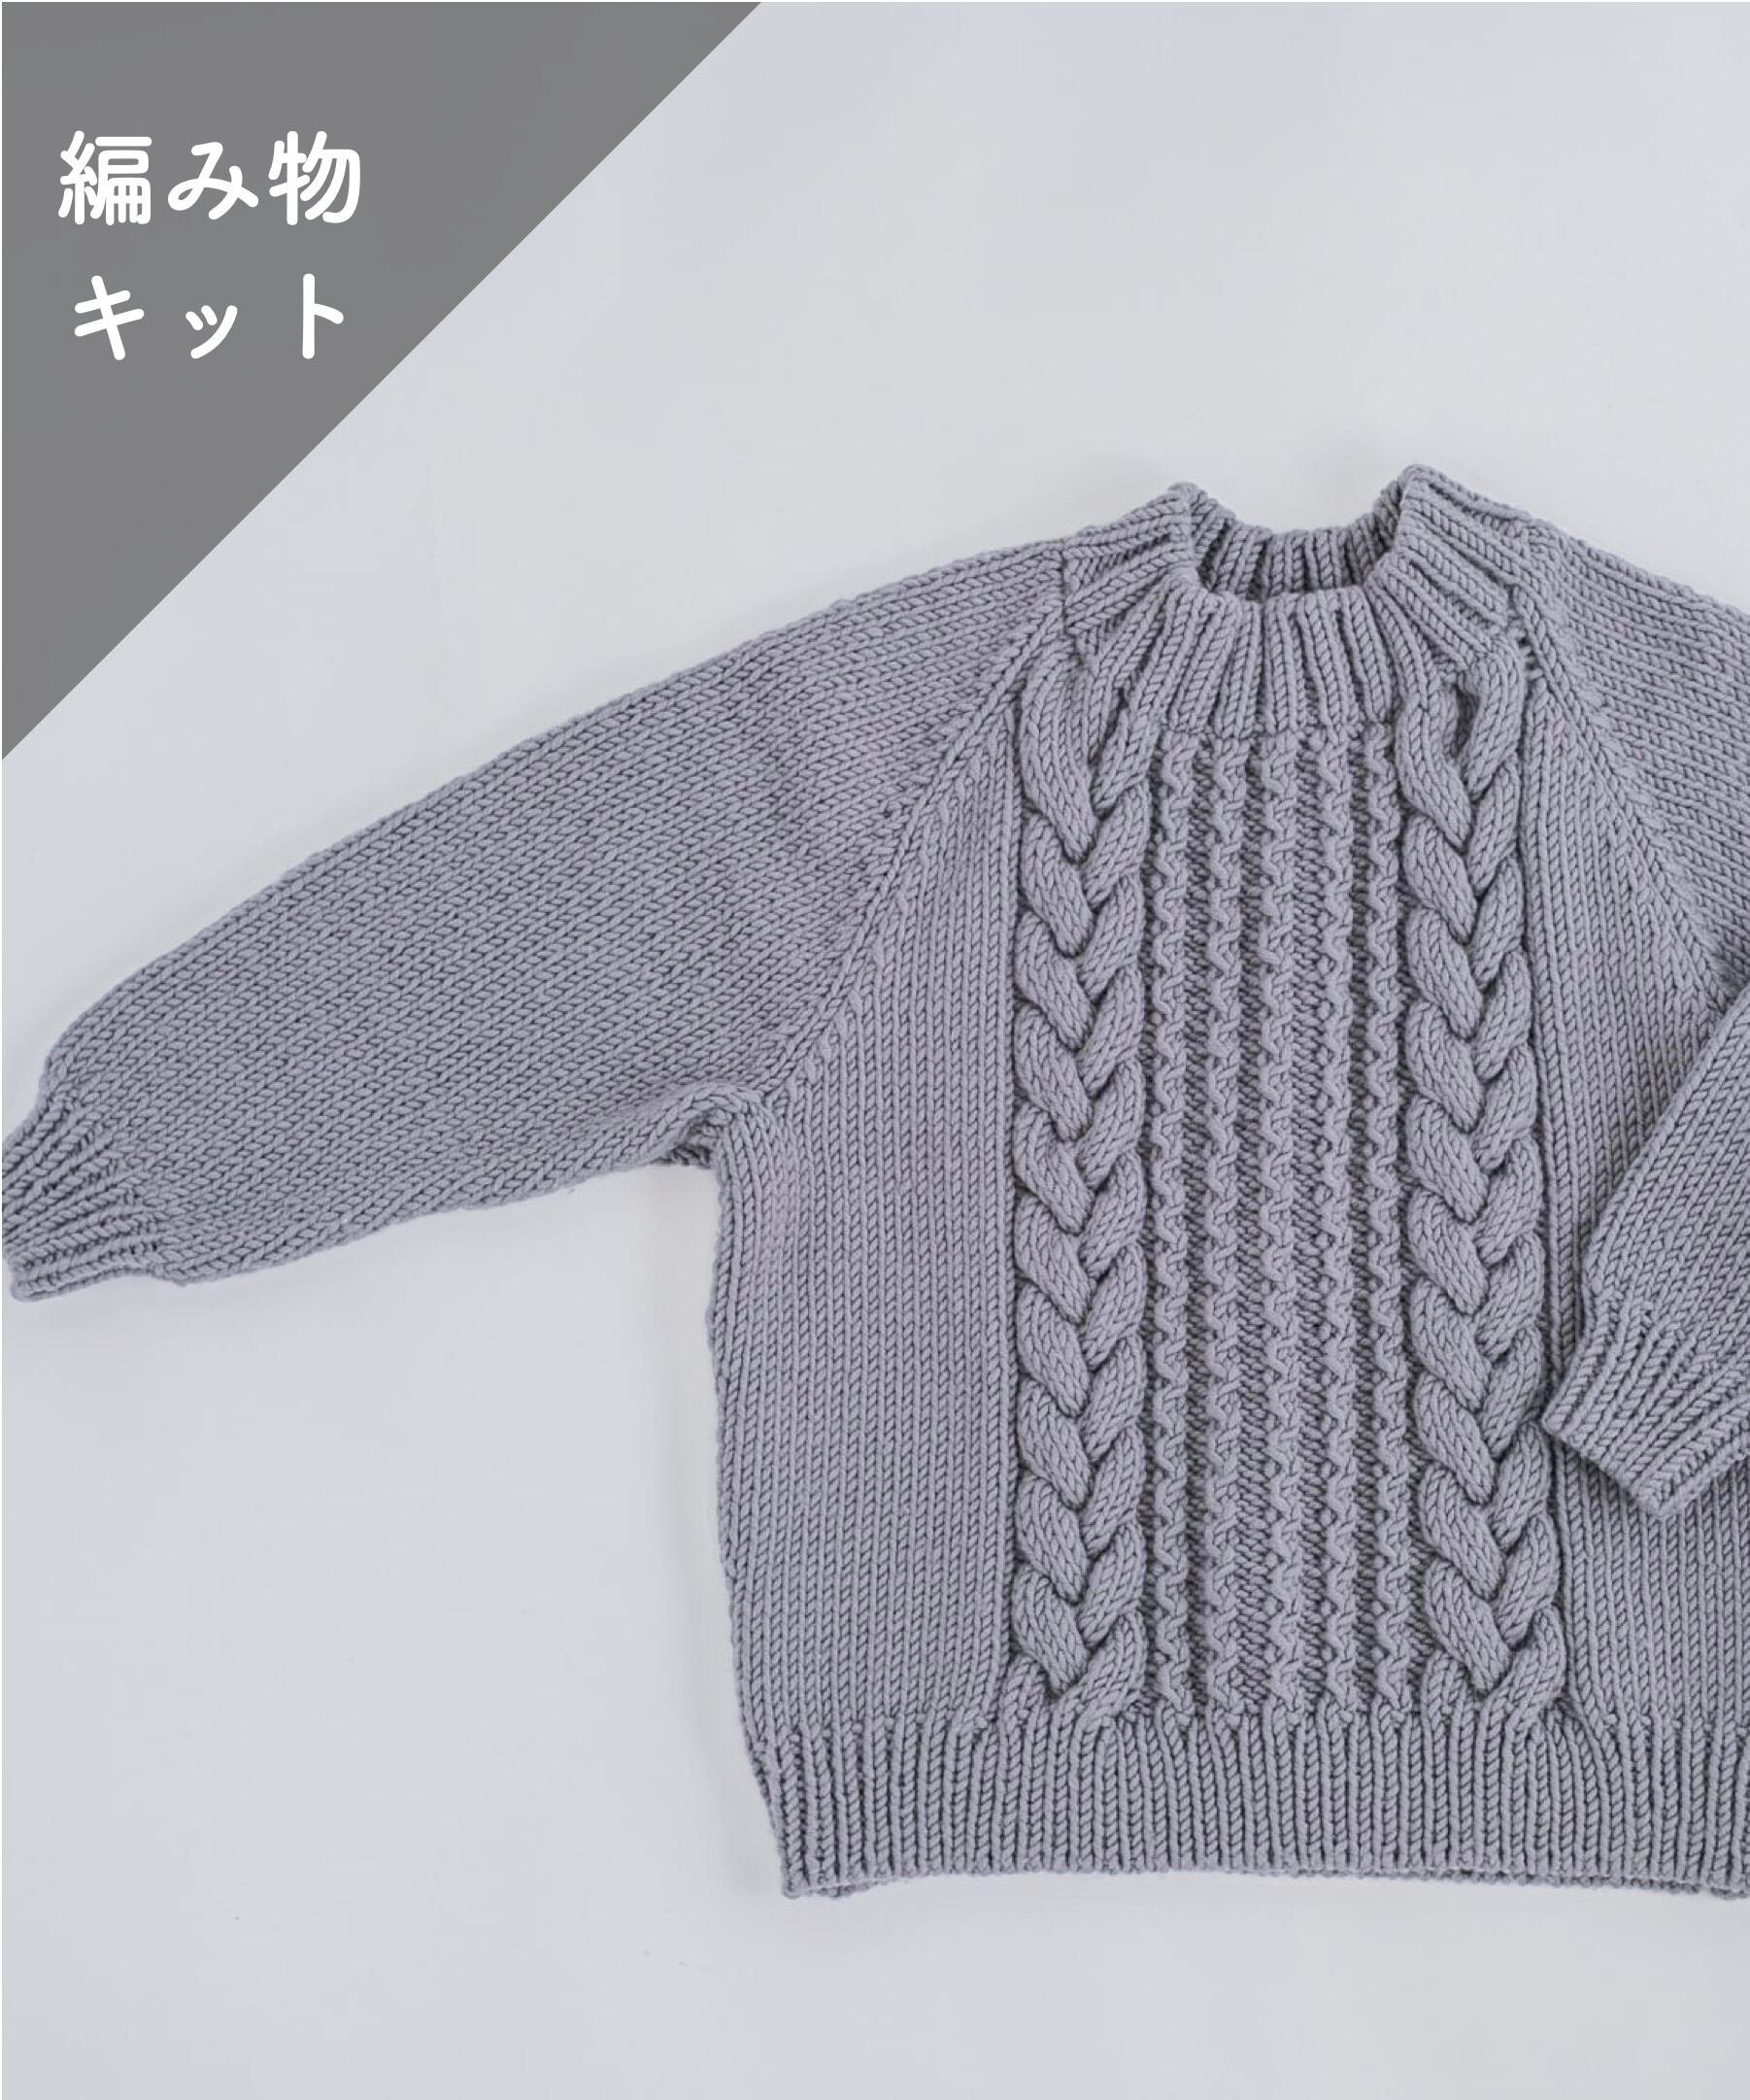 ハンドメイド 手編み ケーブル編み ニットカーディガン ウール wool